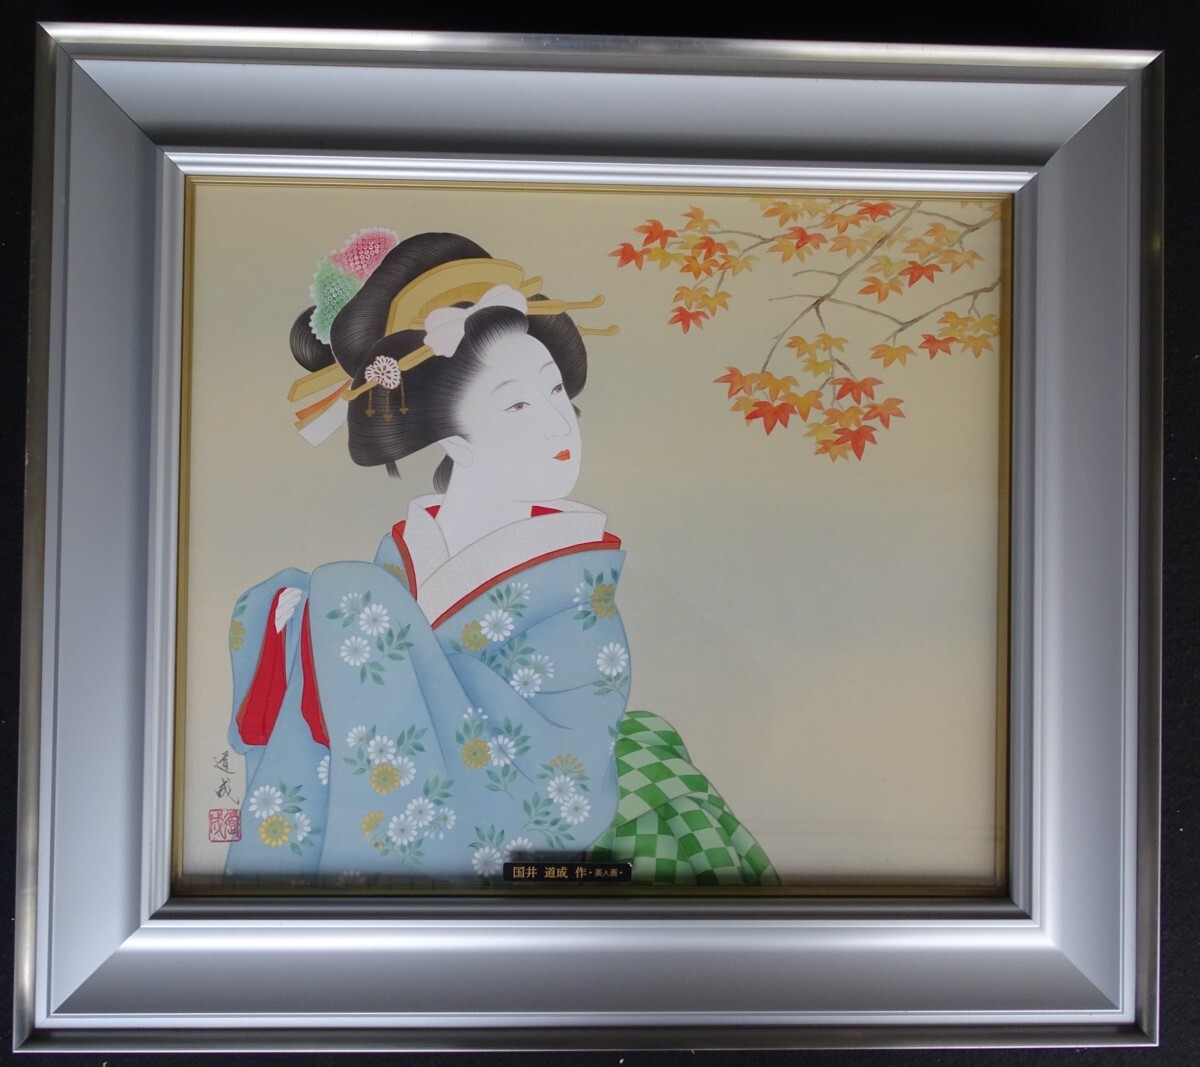 ･ اسم المؤلف: ميتشيناري كوني موضوع اللوحة: لوحة امرأة جميلة التقنية: اللوحة اليابانية (اللوحة الأصلية) GT33 HIO-2-R4-5-20, عمل فني, تلوين, لَوحَة